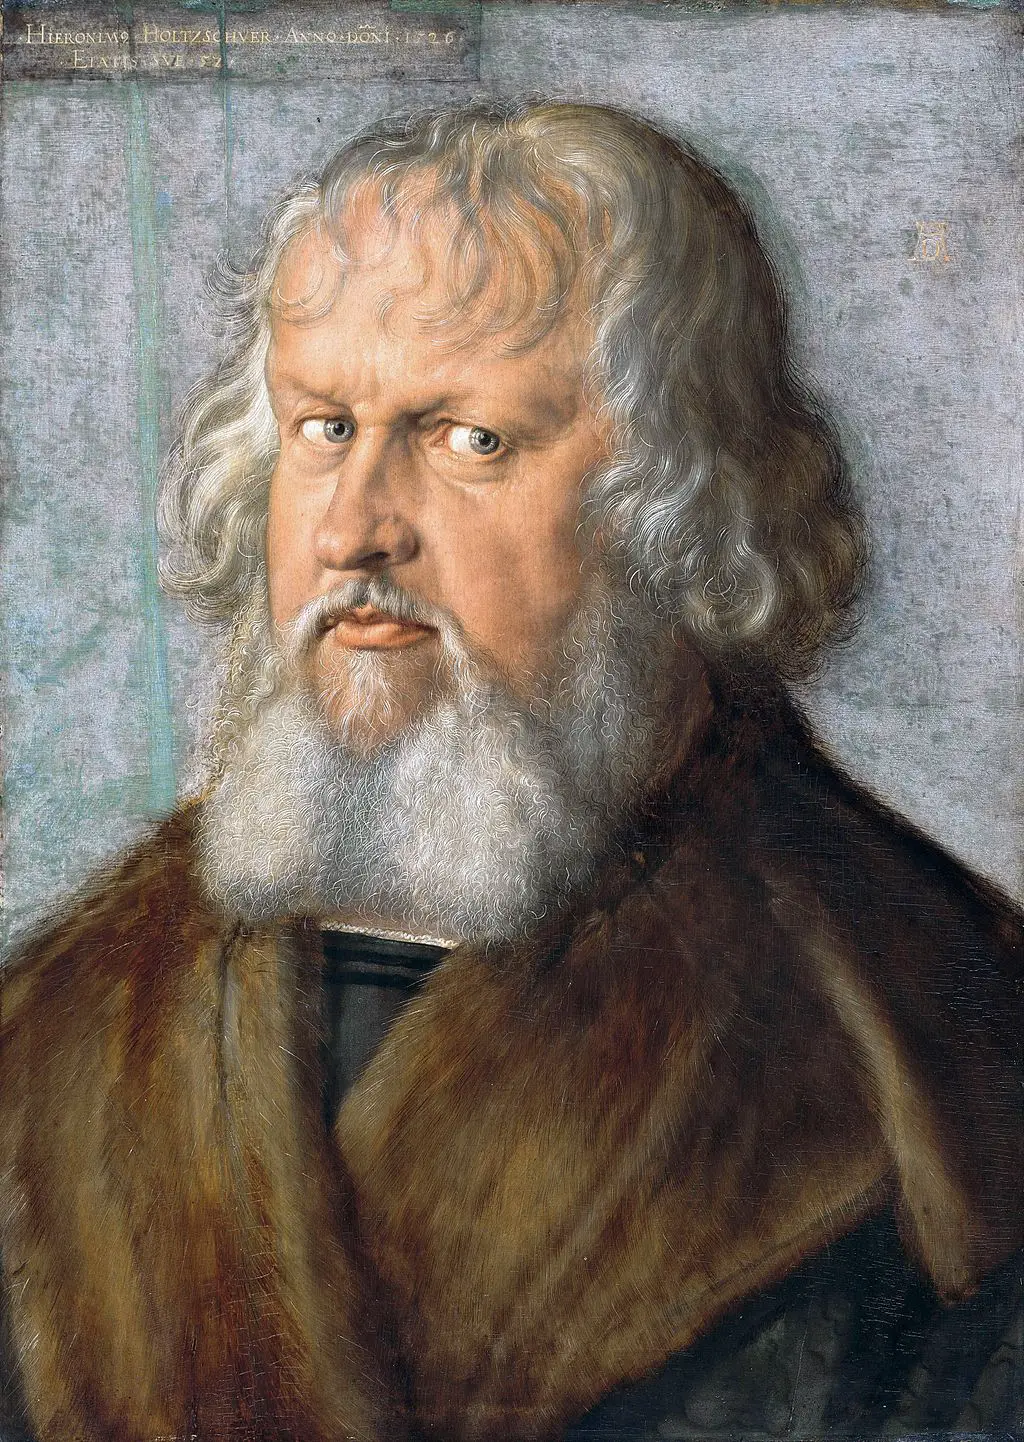 Portrait of Hieronymus Holzschuher in Detail Albrecht Durer